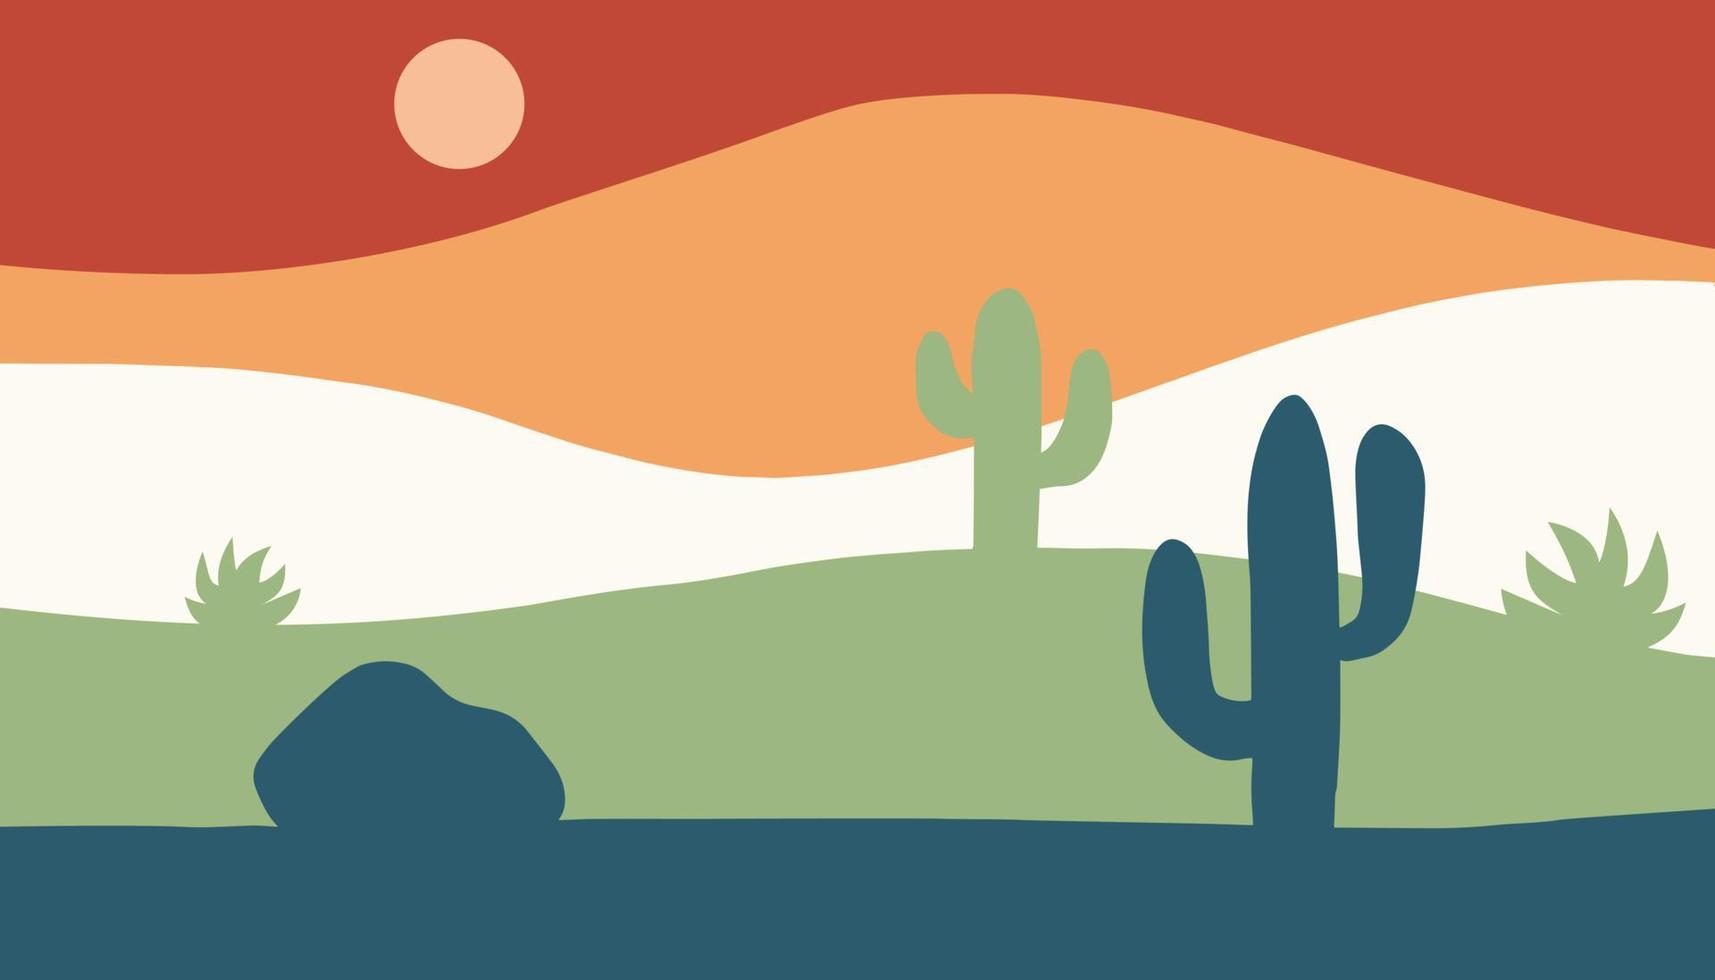 Vektor minimalistischer zeitgenössischer Hintergrund. südwestliche Wüstenberglandschaft mit Kakteen im flachen Stil. tapete oder banner für web und soziale medien